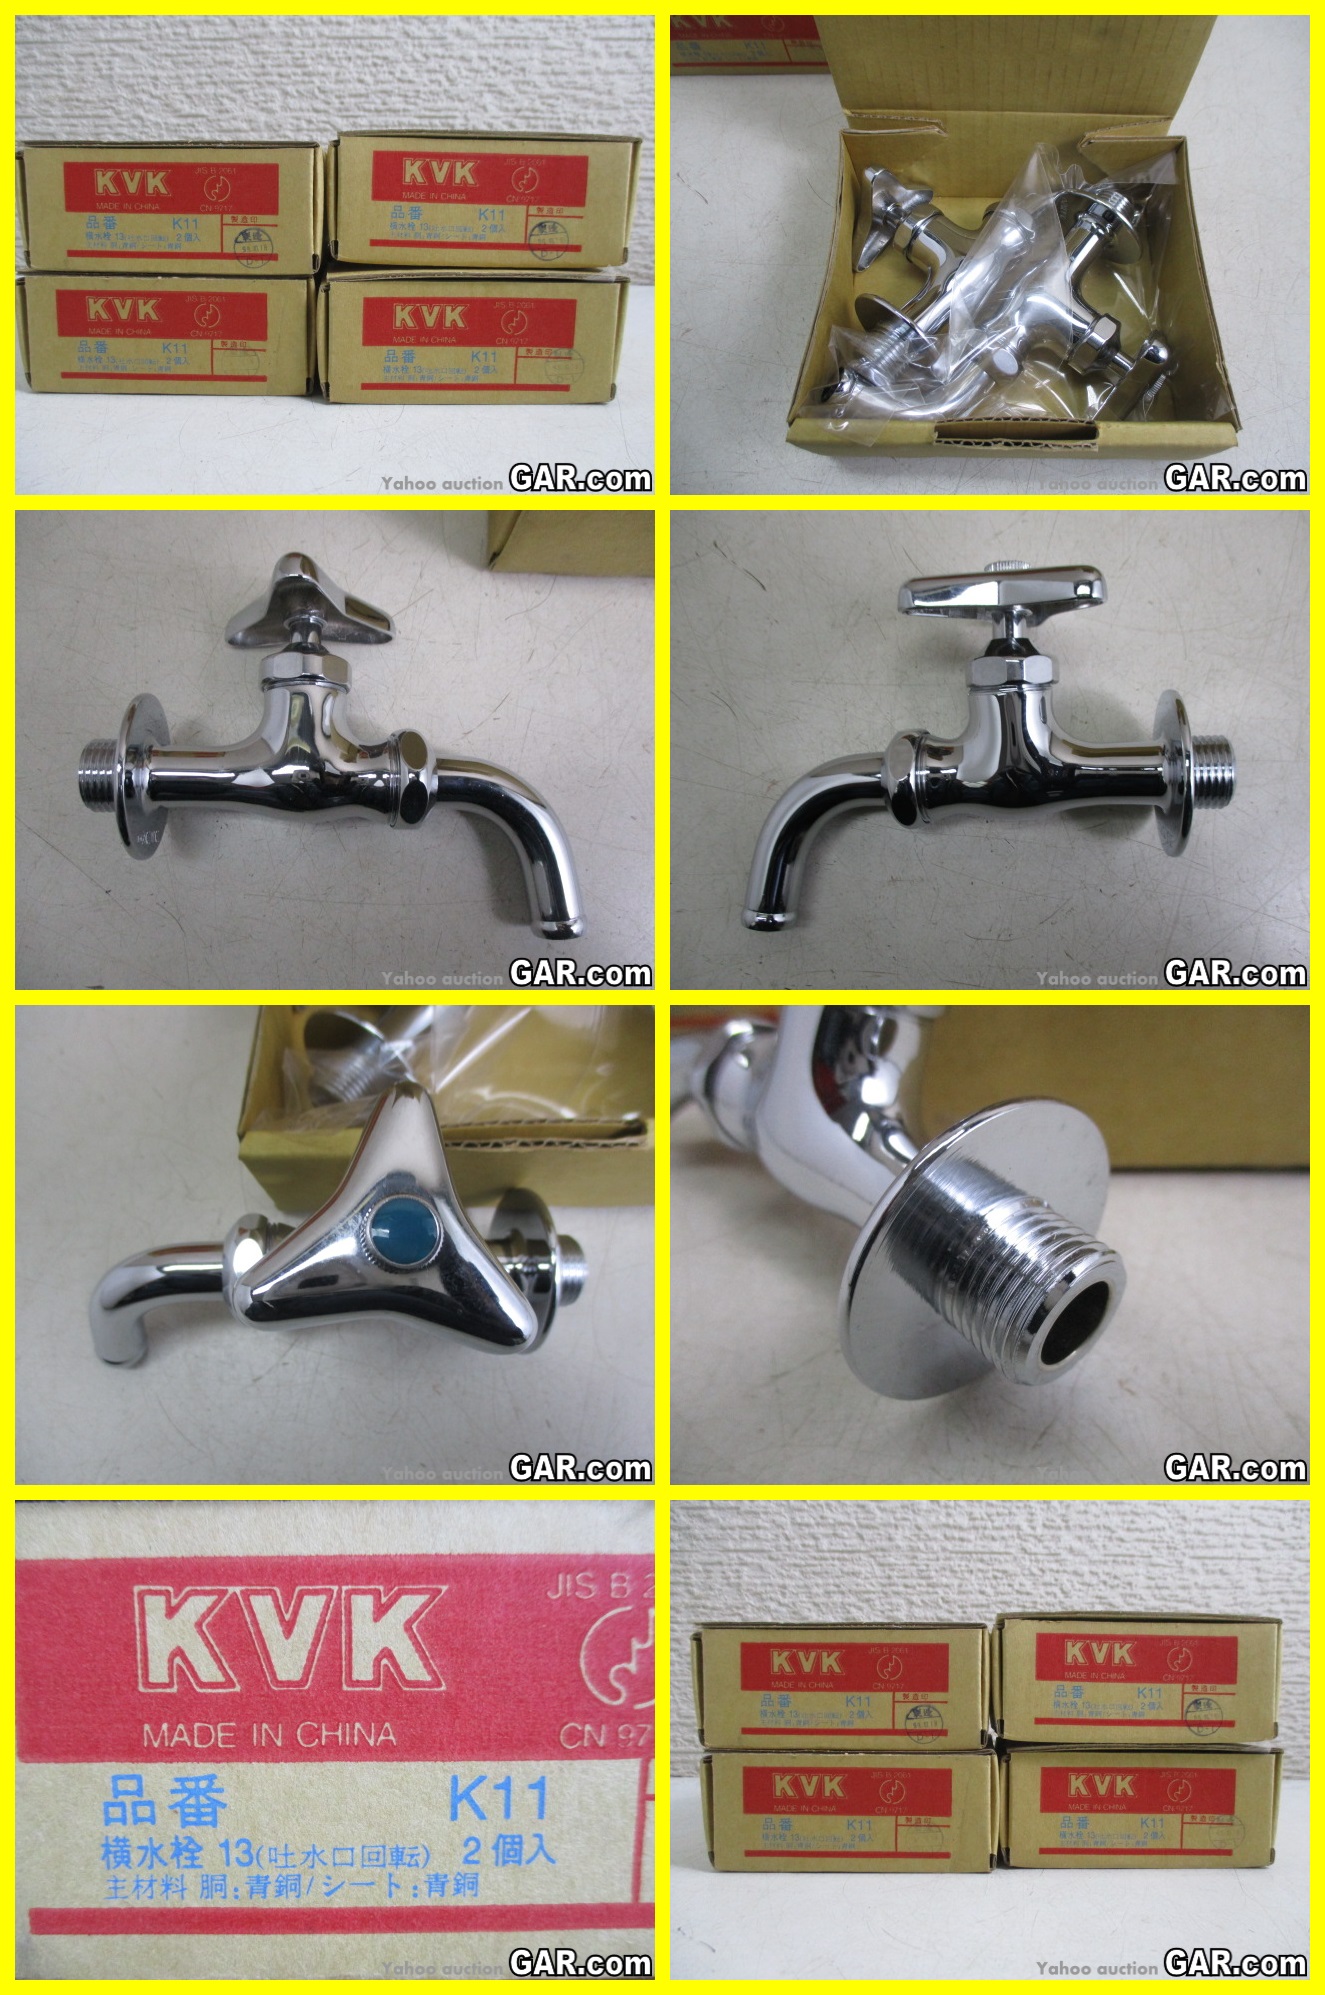 KVK 台付き1穴 シングル混合栓(キッチン用)(センサー付) (水栓)KVK KM6091SCEC 返品種別B - 1